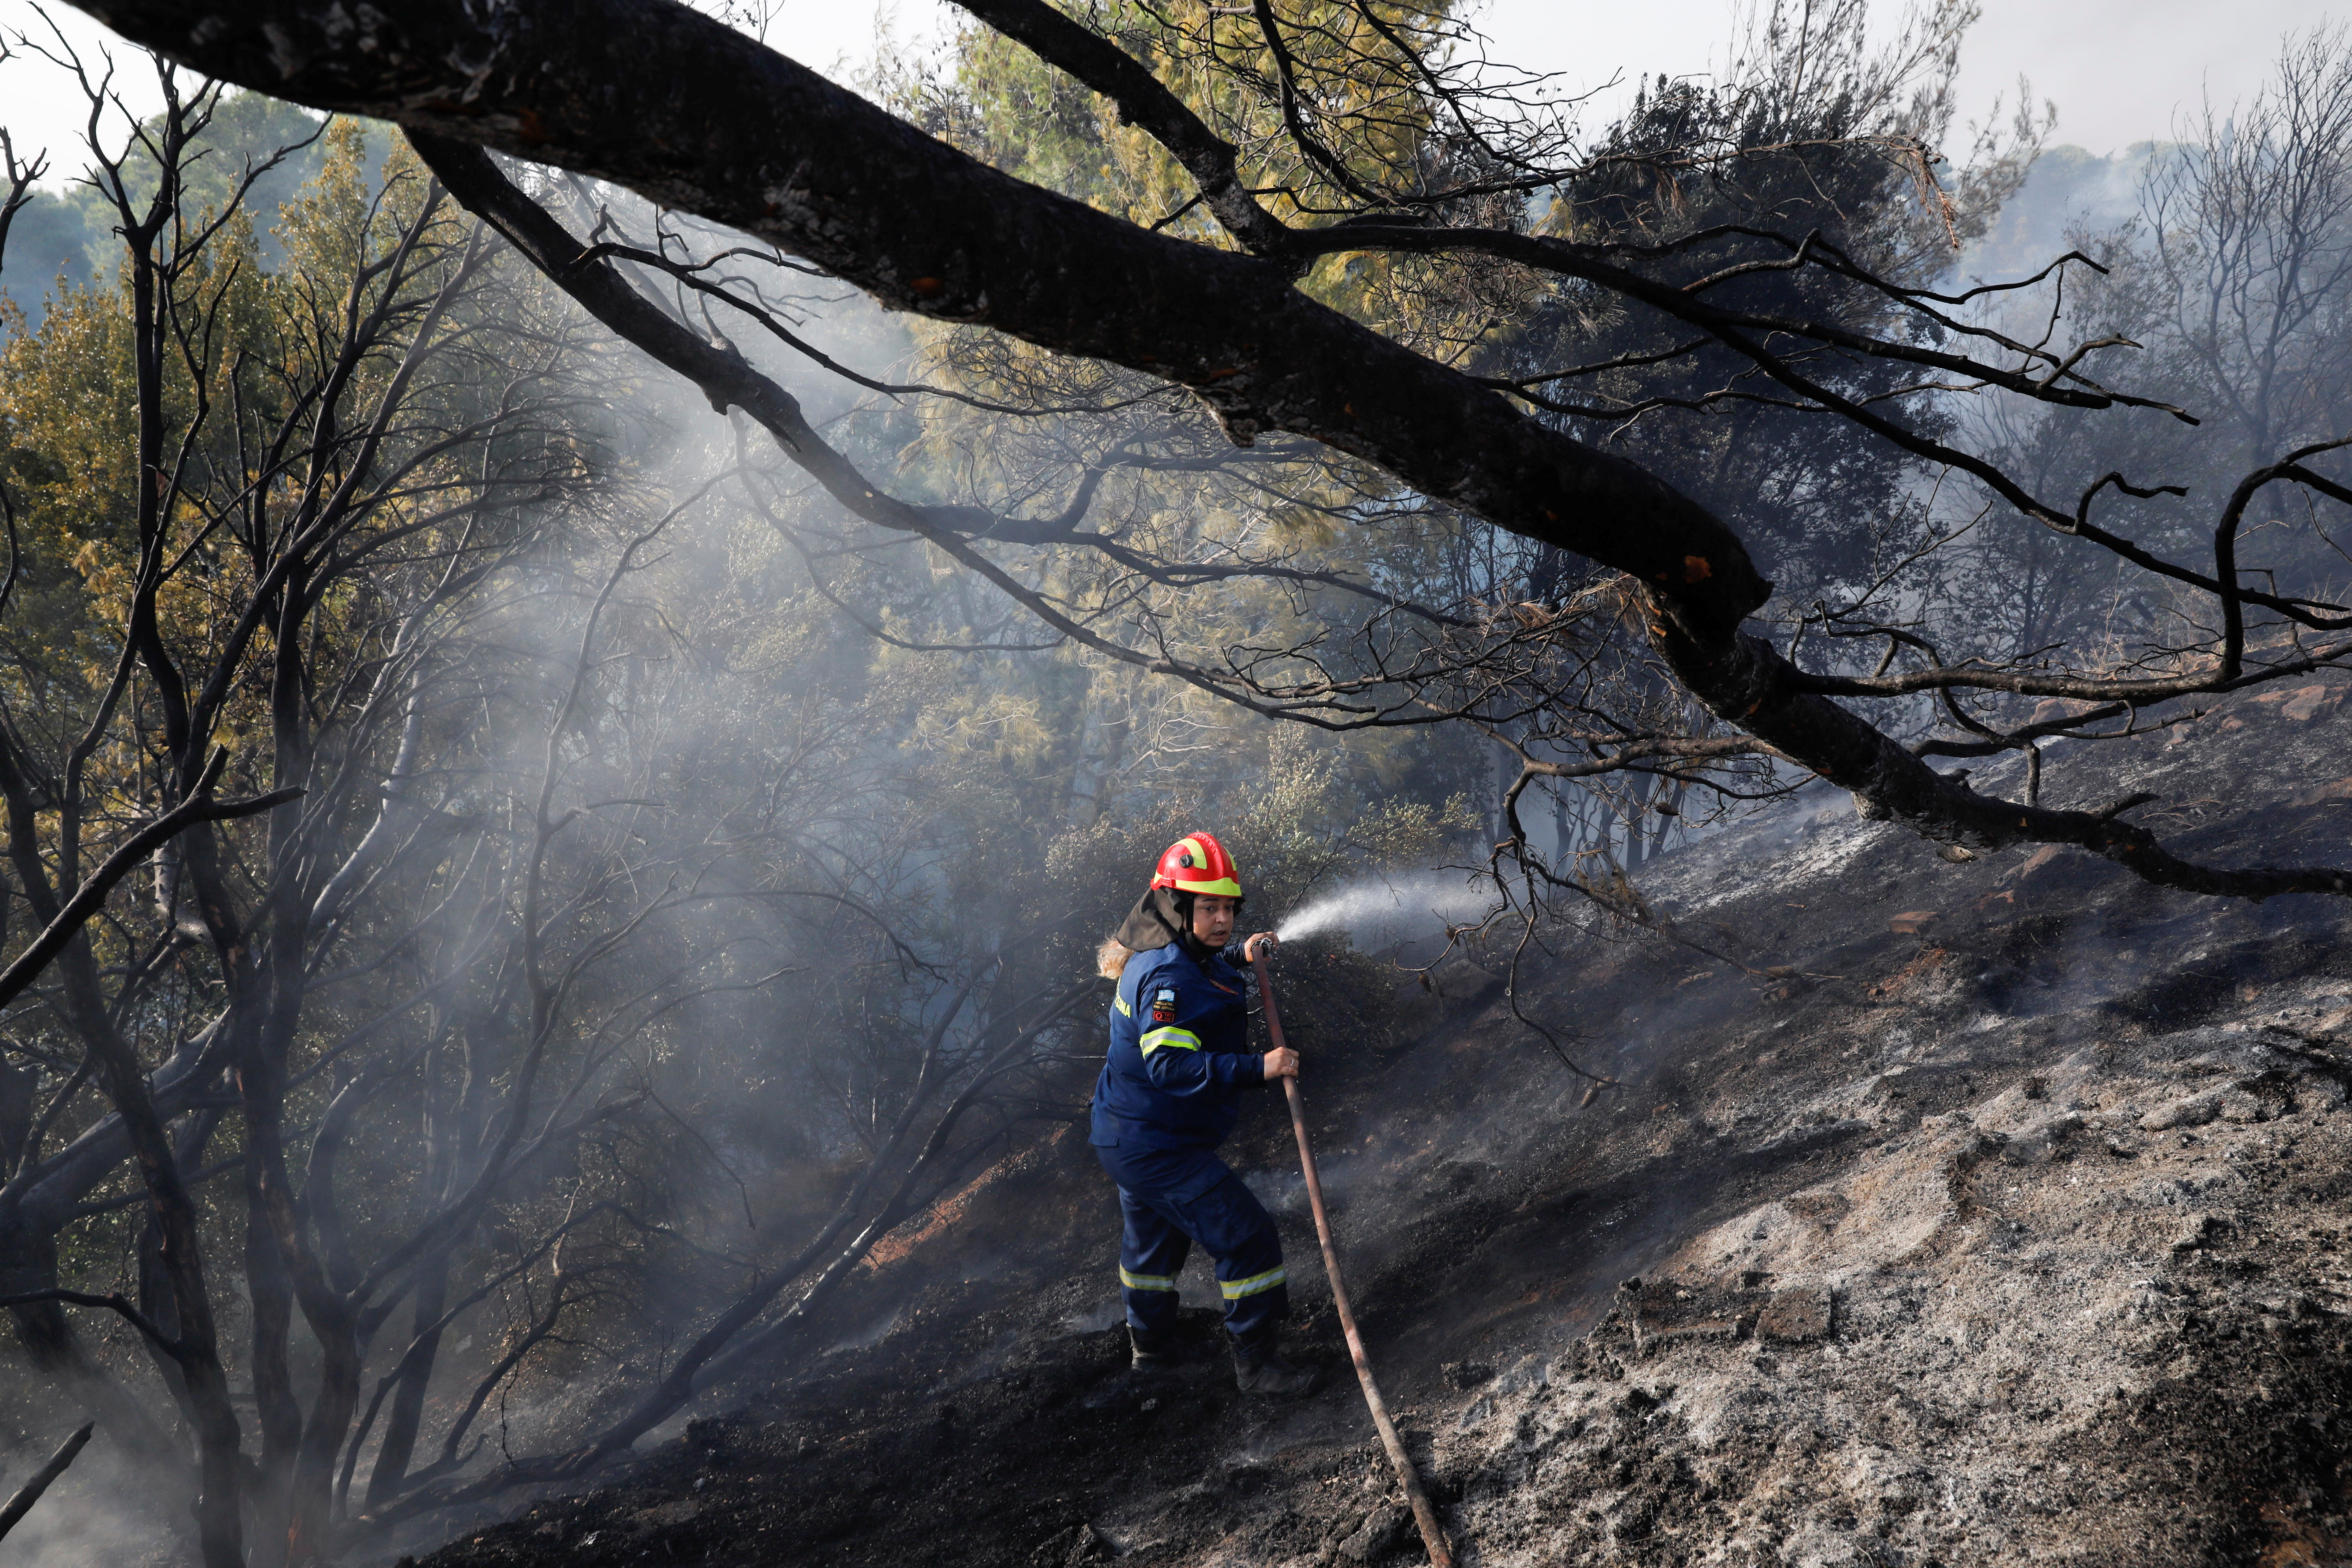 นักผจญเพลิงพ่นน้ำเพื่อช่วยต่อสู้กับไฟป่าที่ชานเมือง Varympompi ทางตอนเหนือของกรุงเอเธนส์ประเทศกรีซ 4 สิงหาคม 2021 REUTERS / Costas Baltas